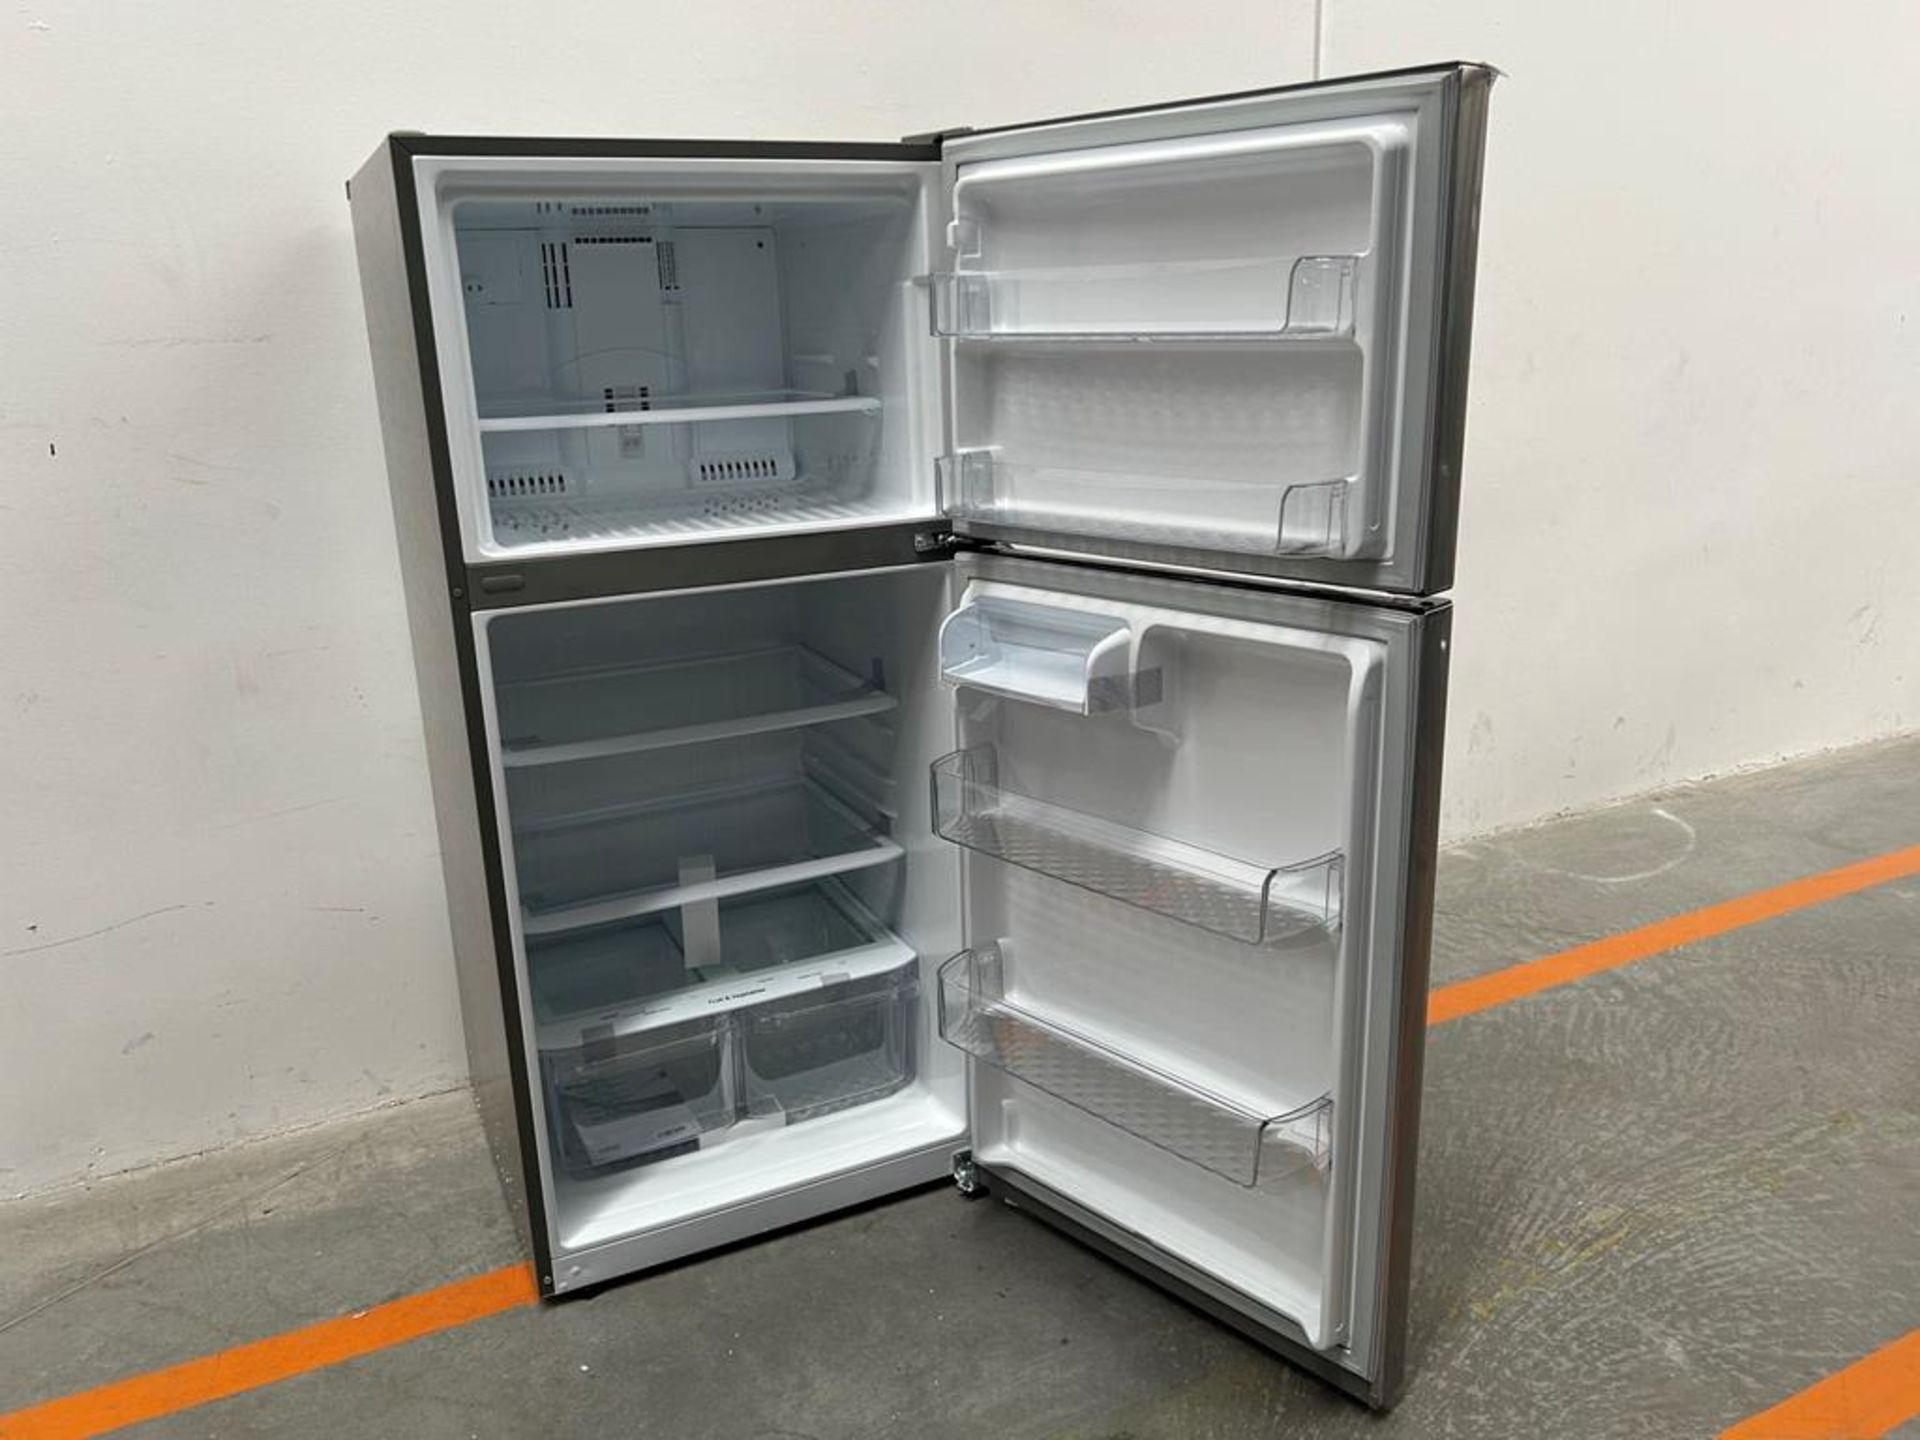 (NUEVO) Refrigerador Marca LG, Modelo LT57BPSX, Serie 1U863, Color GRIS - Image 4 of 11